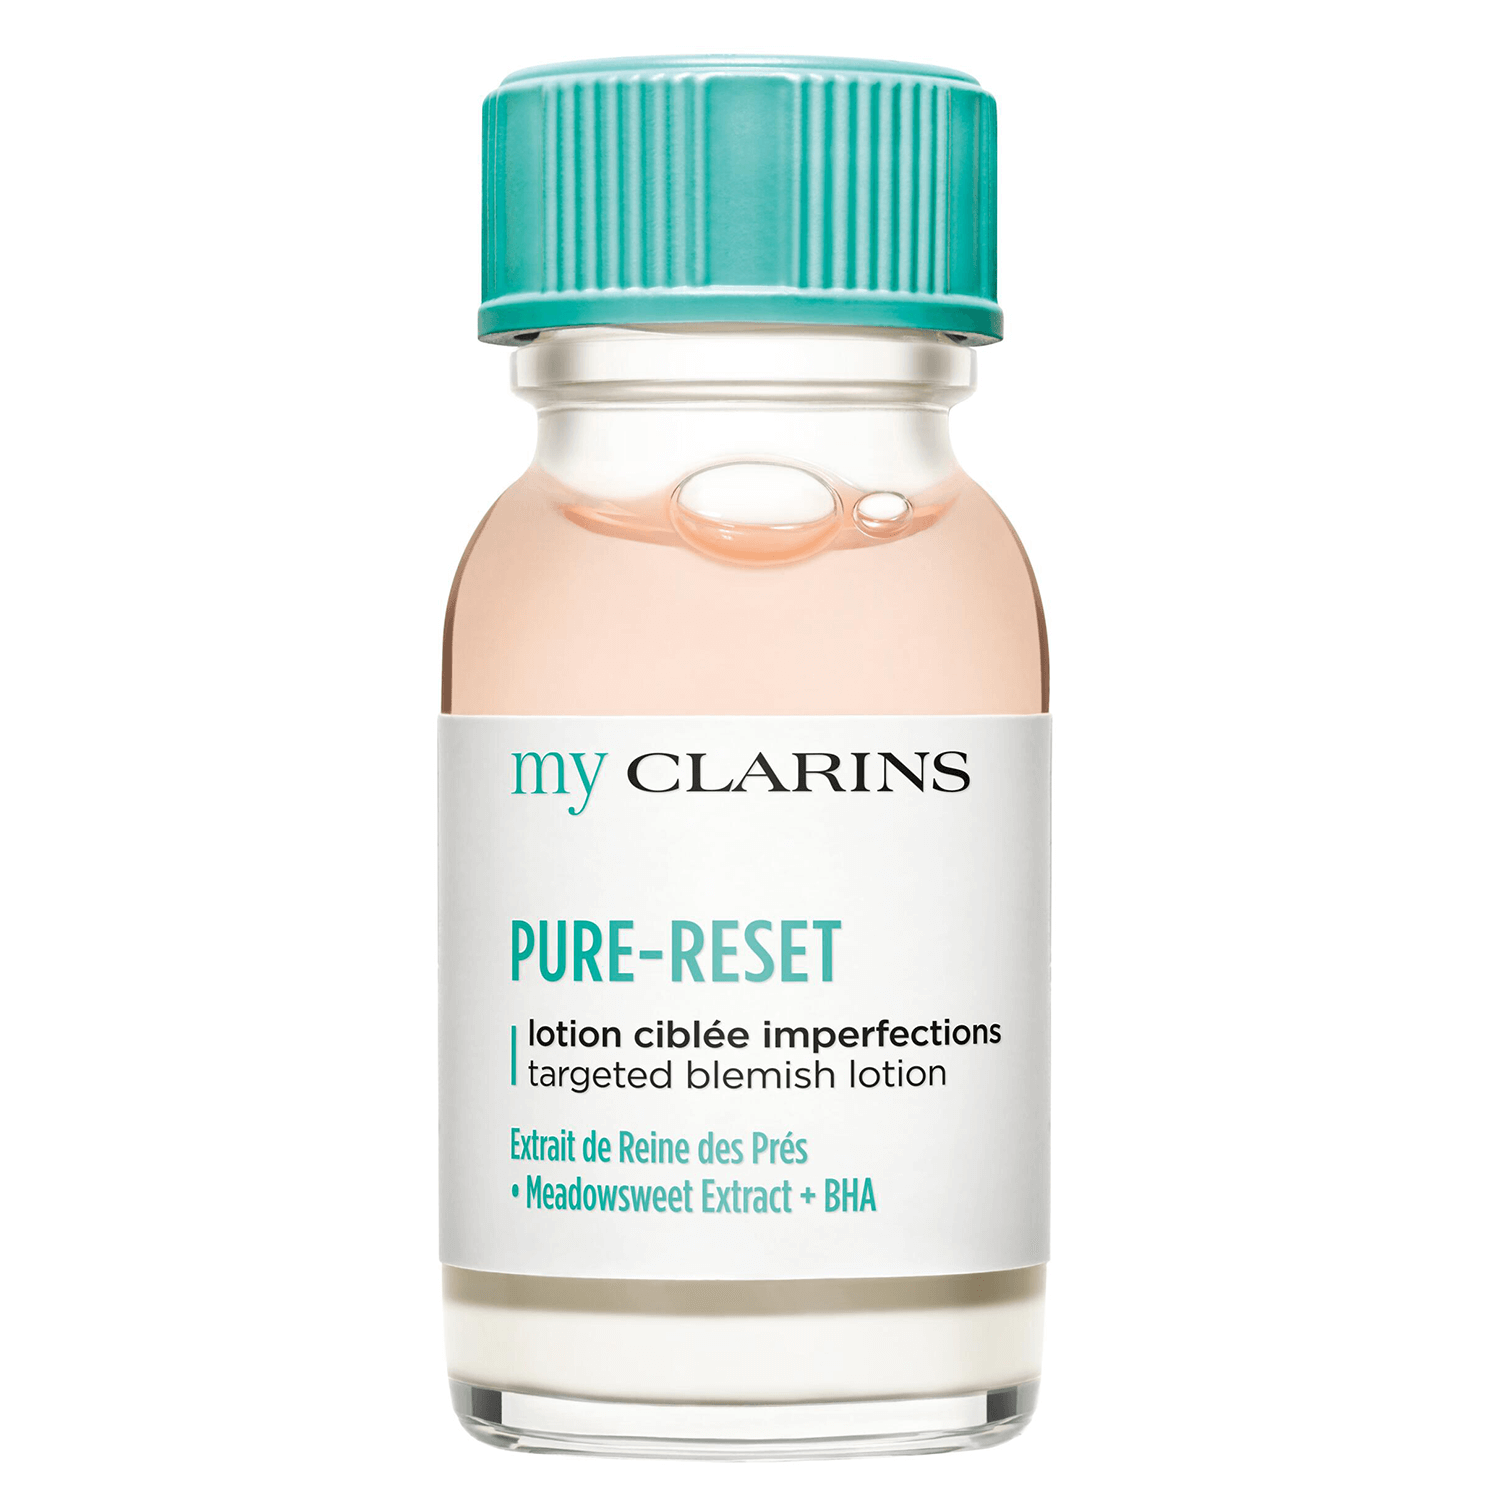 Produktbild von myClarins - PURE-RESET targeted blemish lotion